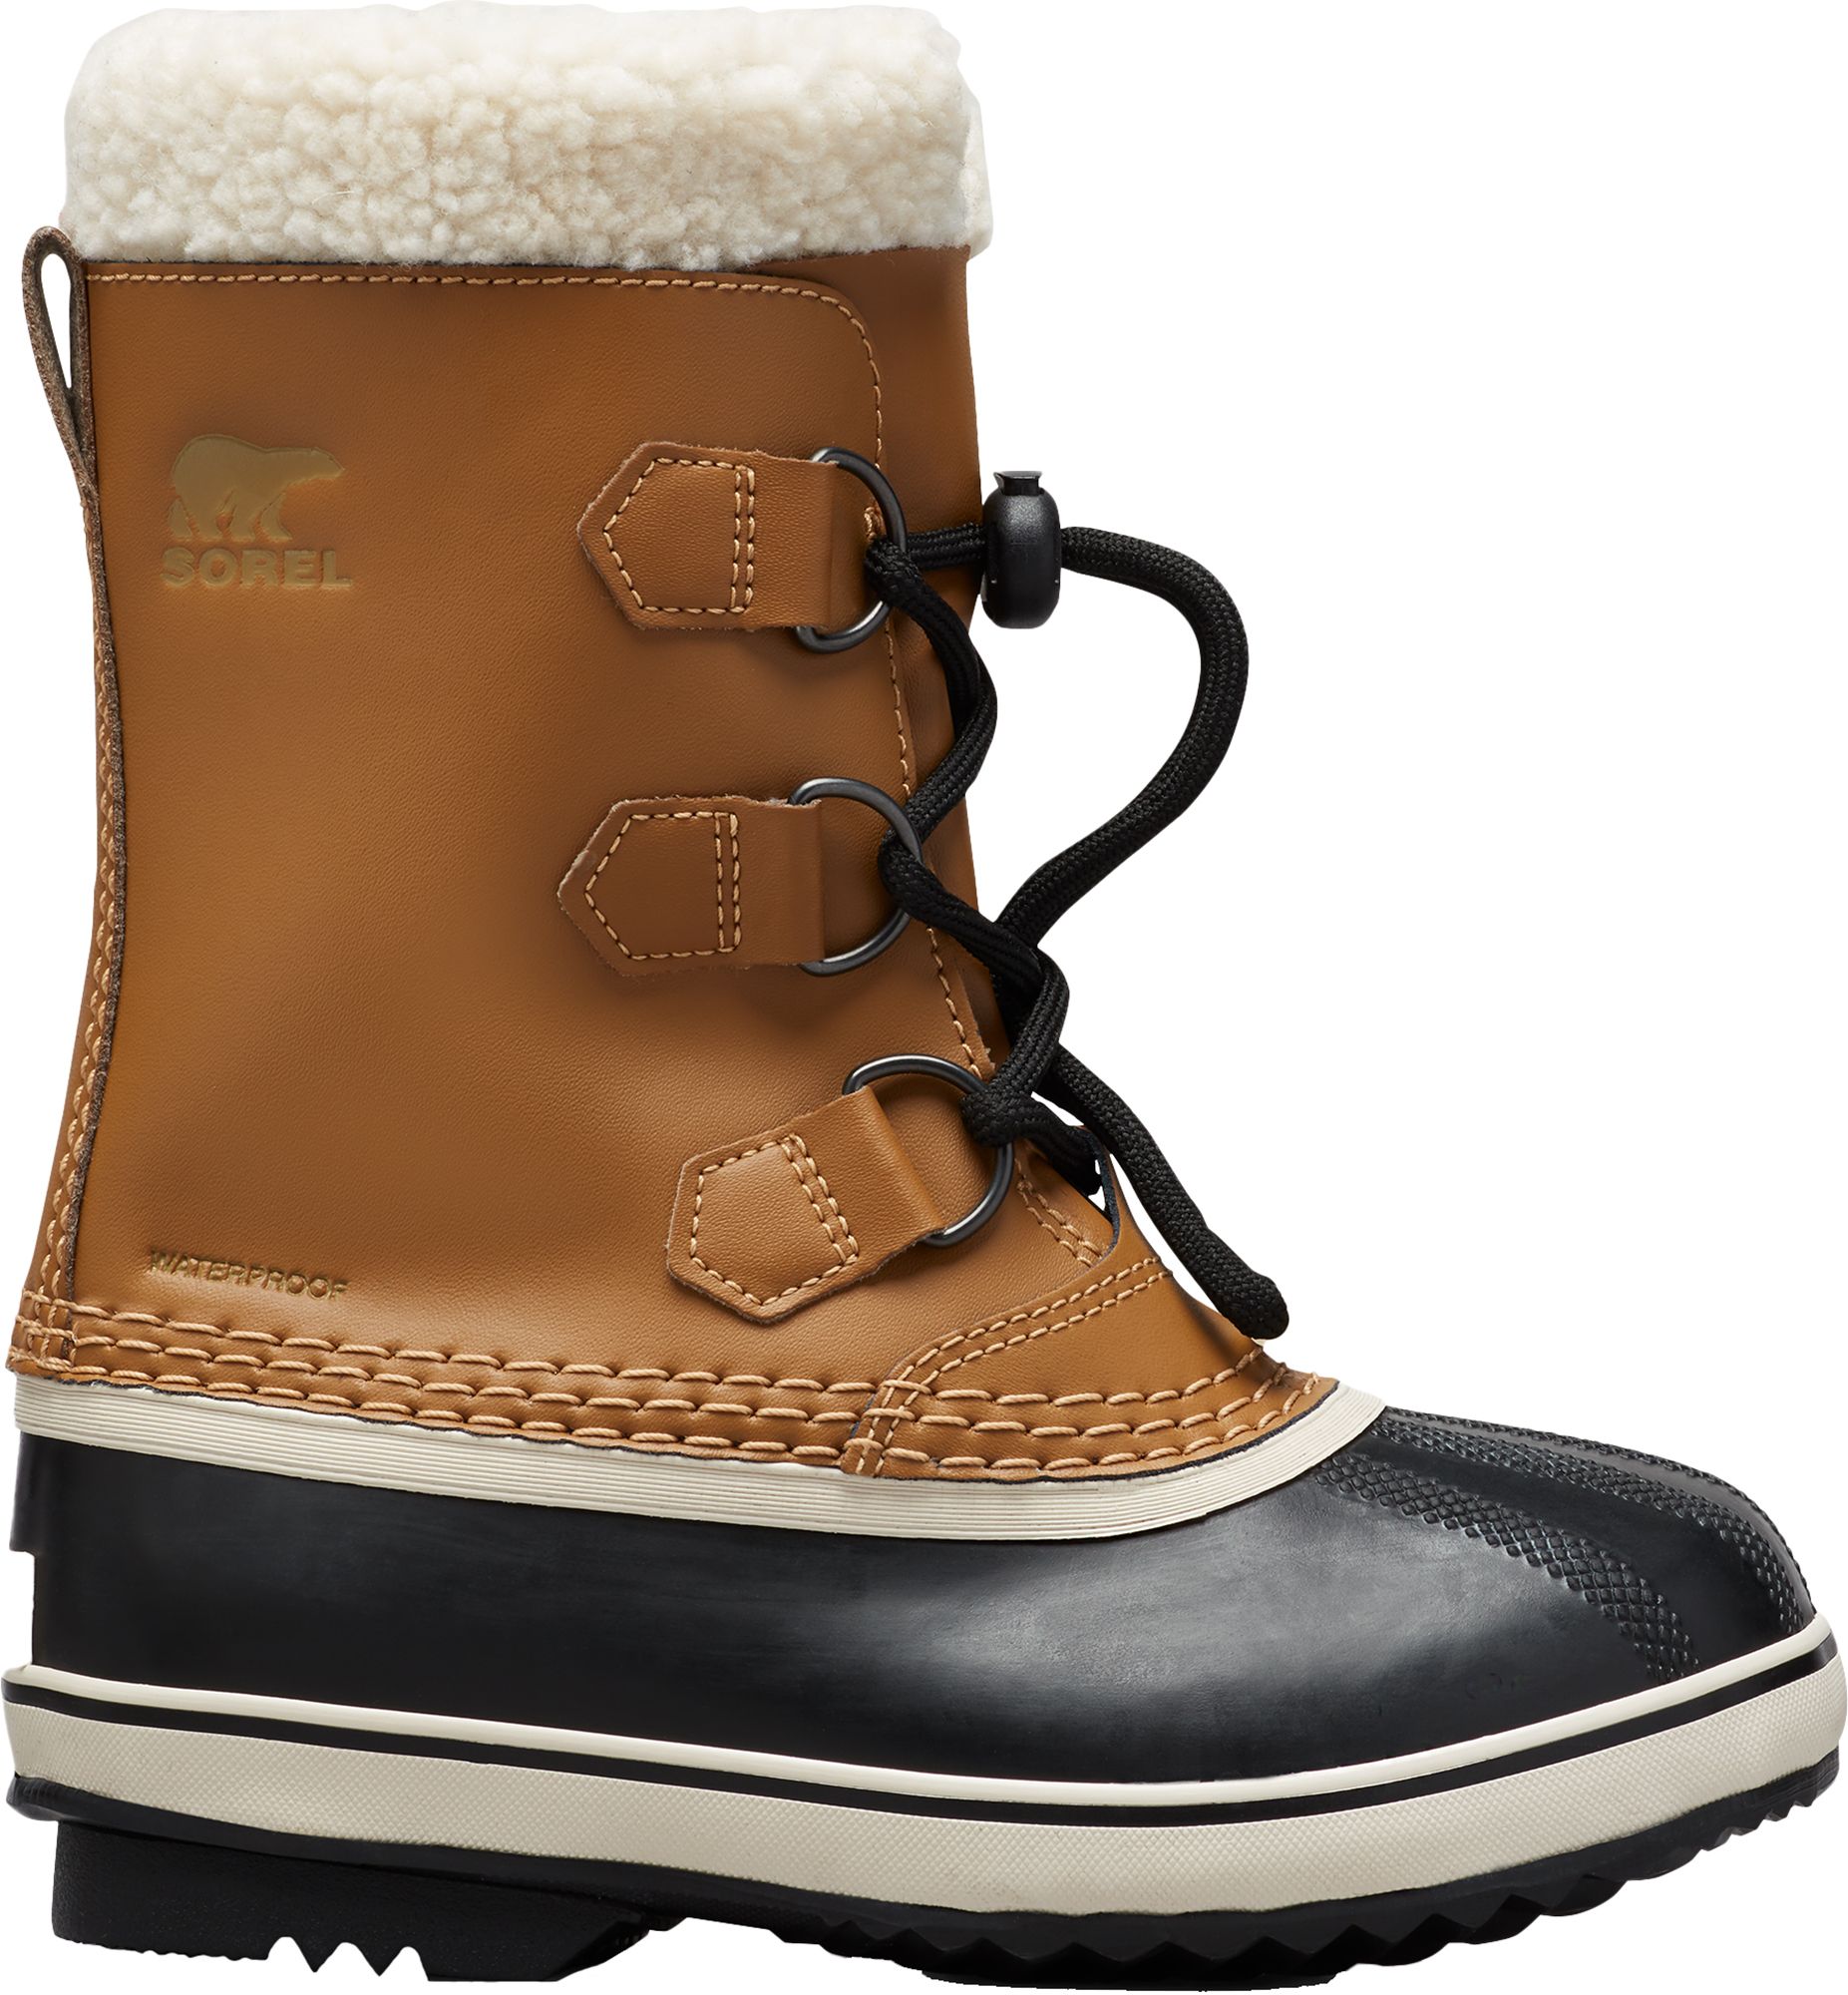 sorel waterproof winter boots